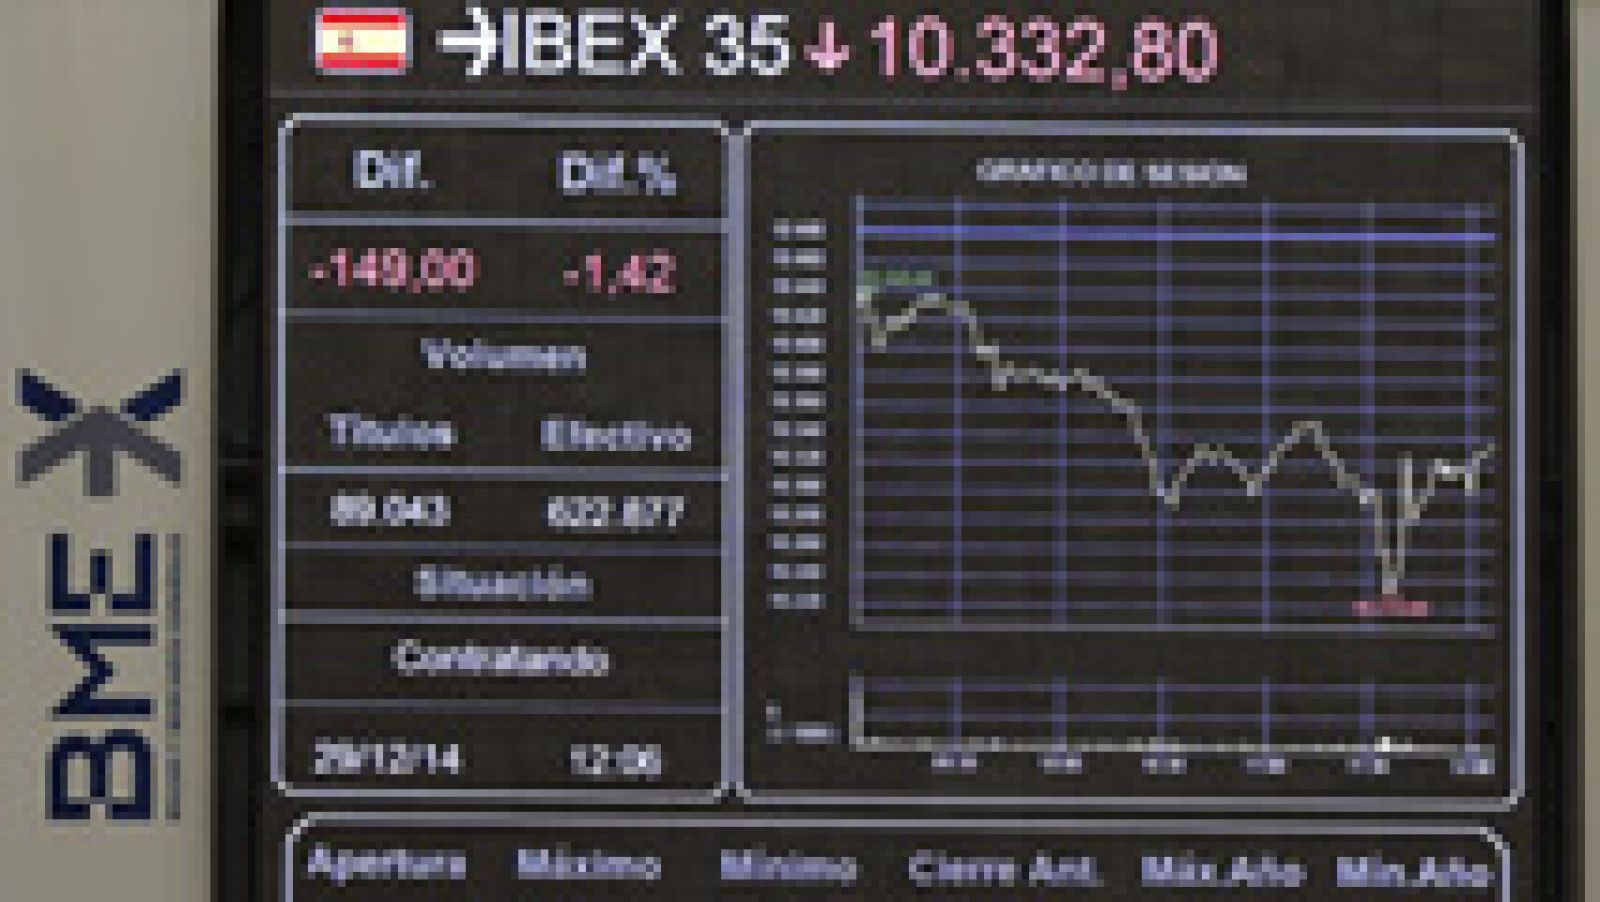 El IBEX 35 cae un 0,84% y pierde los 10.400 en una sesión marcada por el adelanto electoral en Grecia